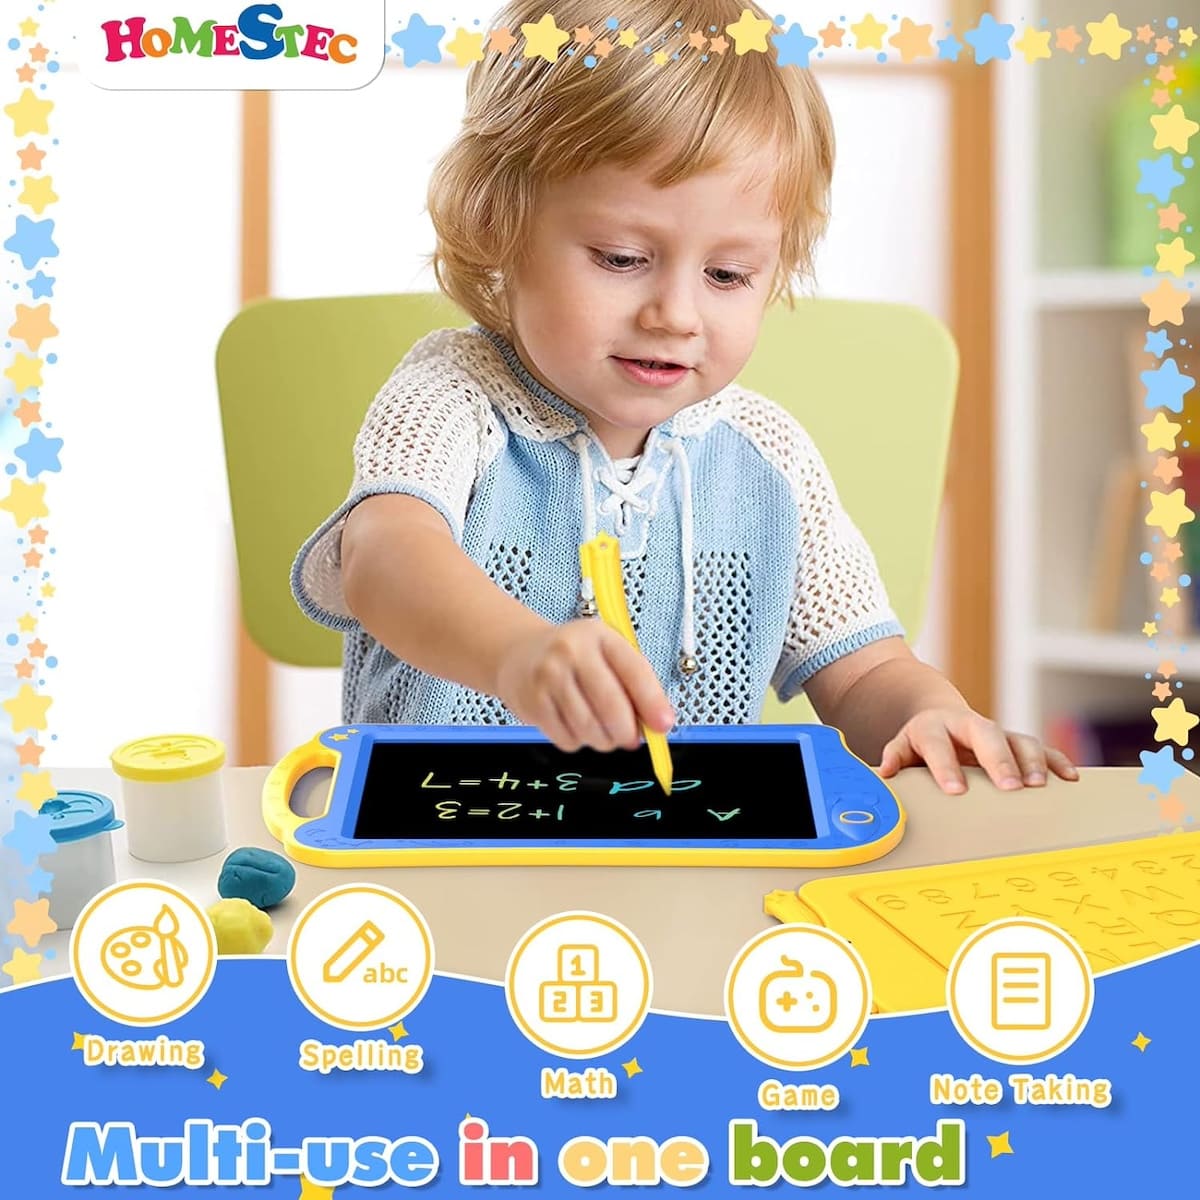 Μαγικό tablet για ζωγραφική με οθόνη LCD για παιδιά